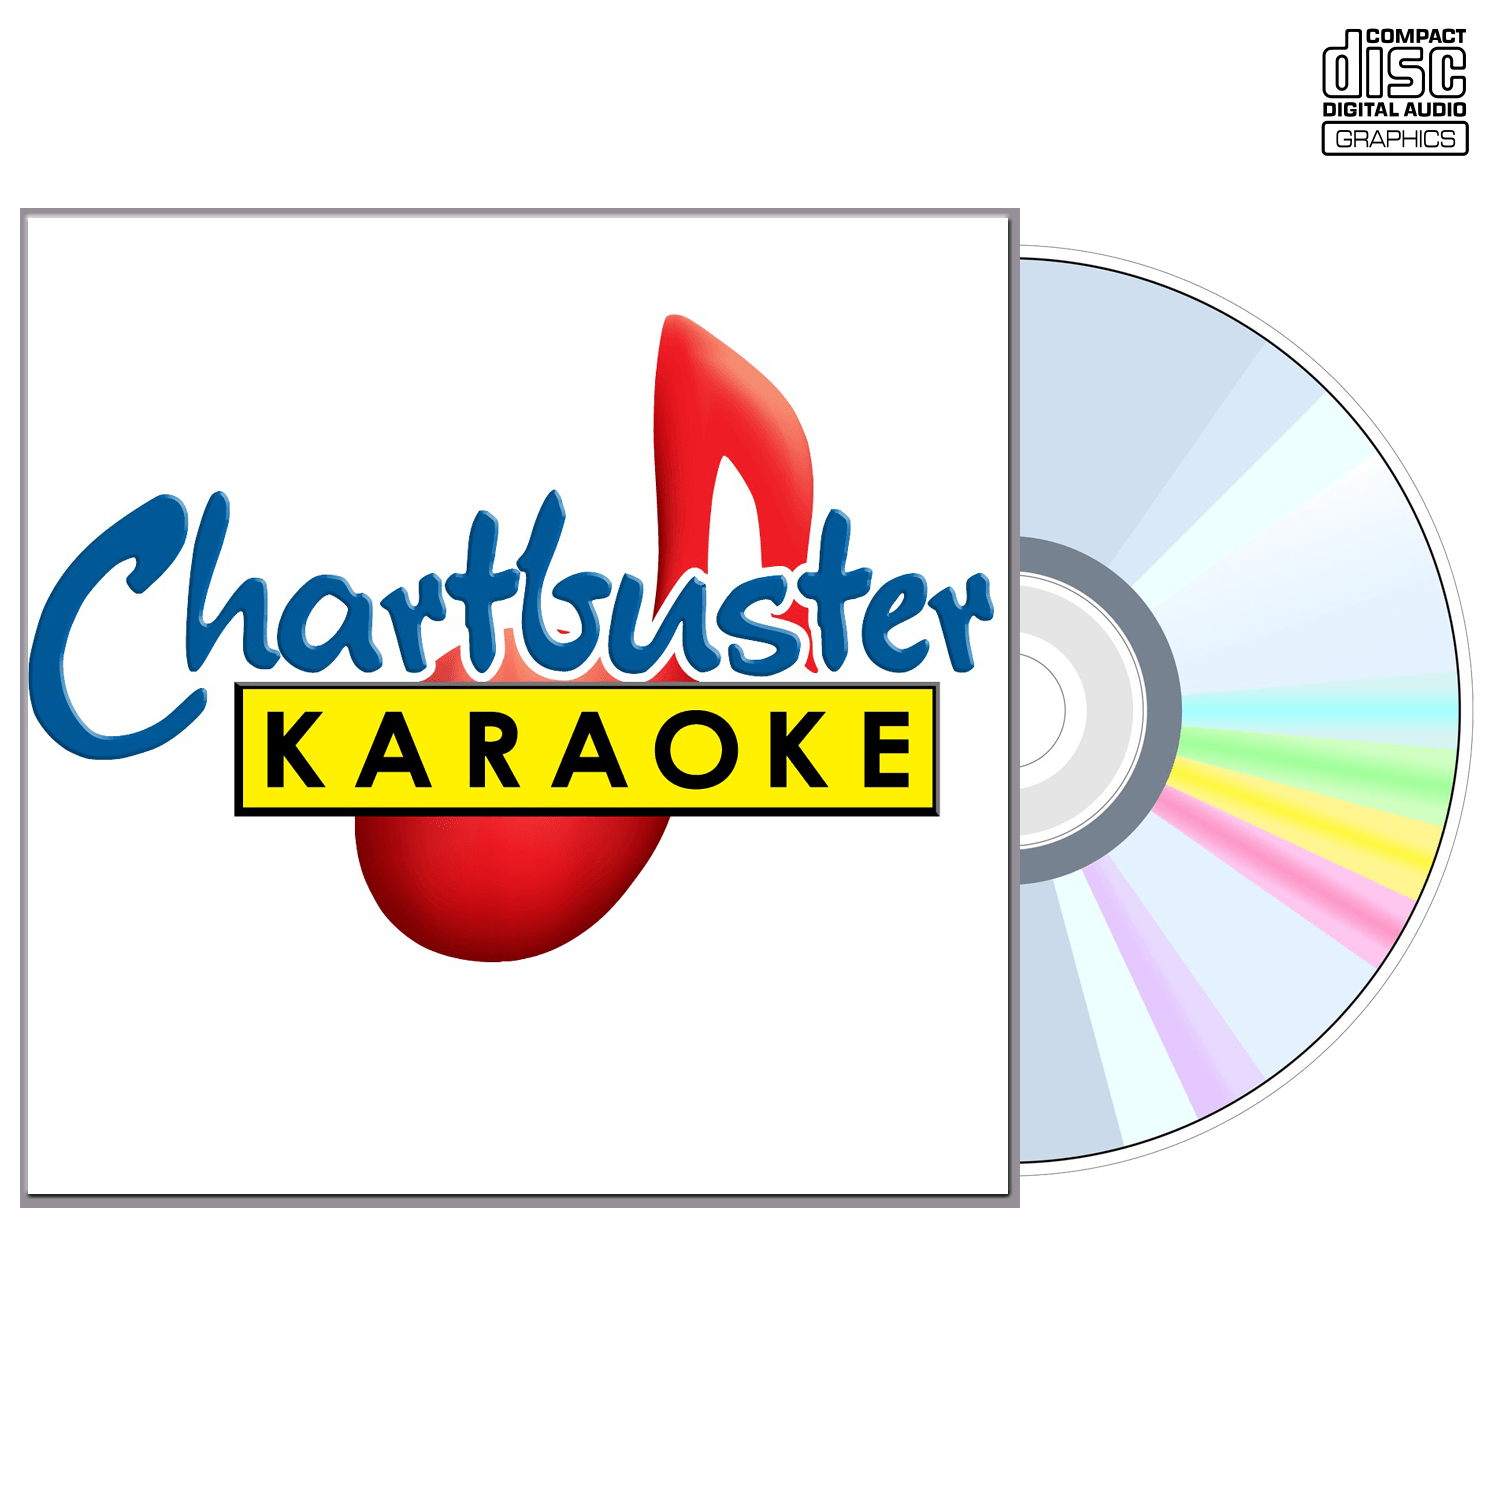 Best Of Tammy Wynette - CD+G - Chartbuster Karaoke - Karaoke Home Entertainment